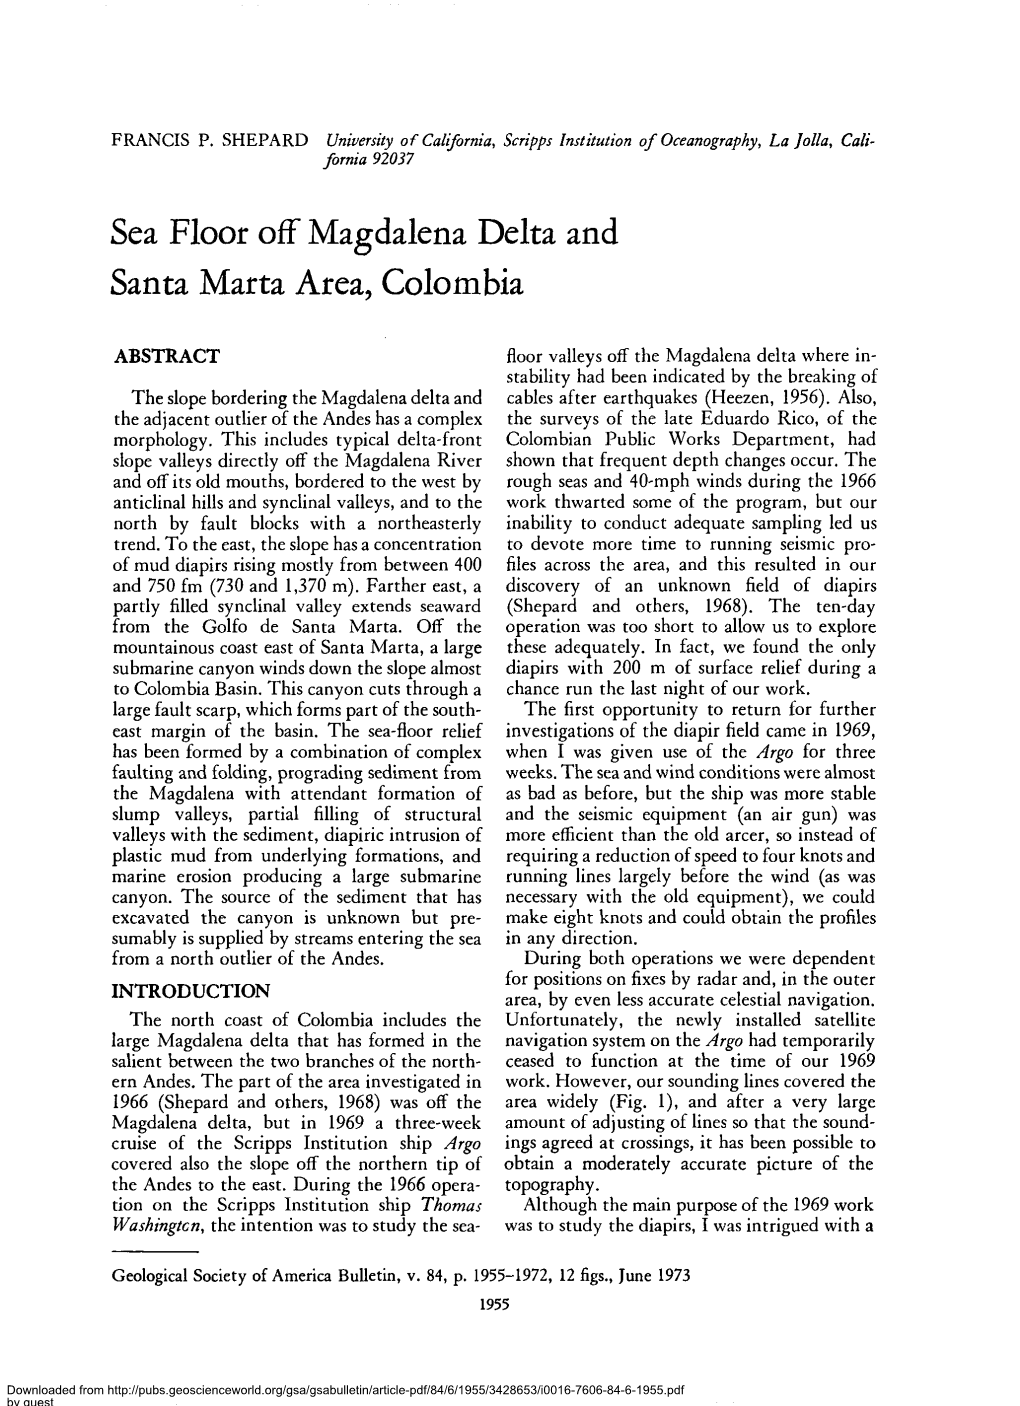 Sea Floor Off Magdalena Delta and Santa Marta Area, Colombia